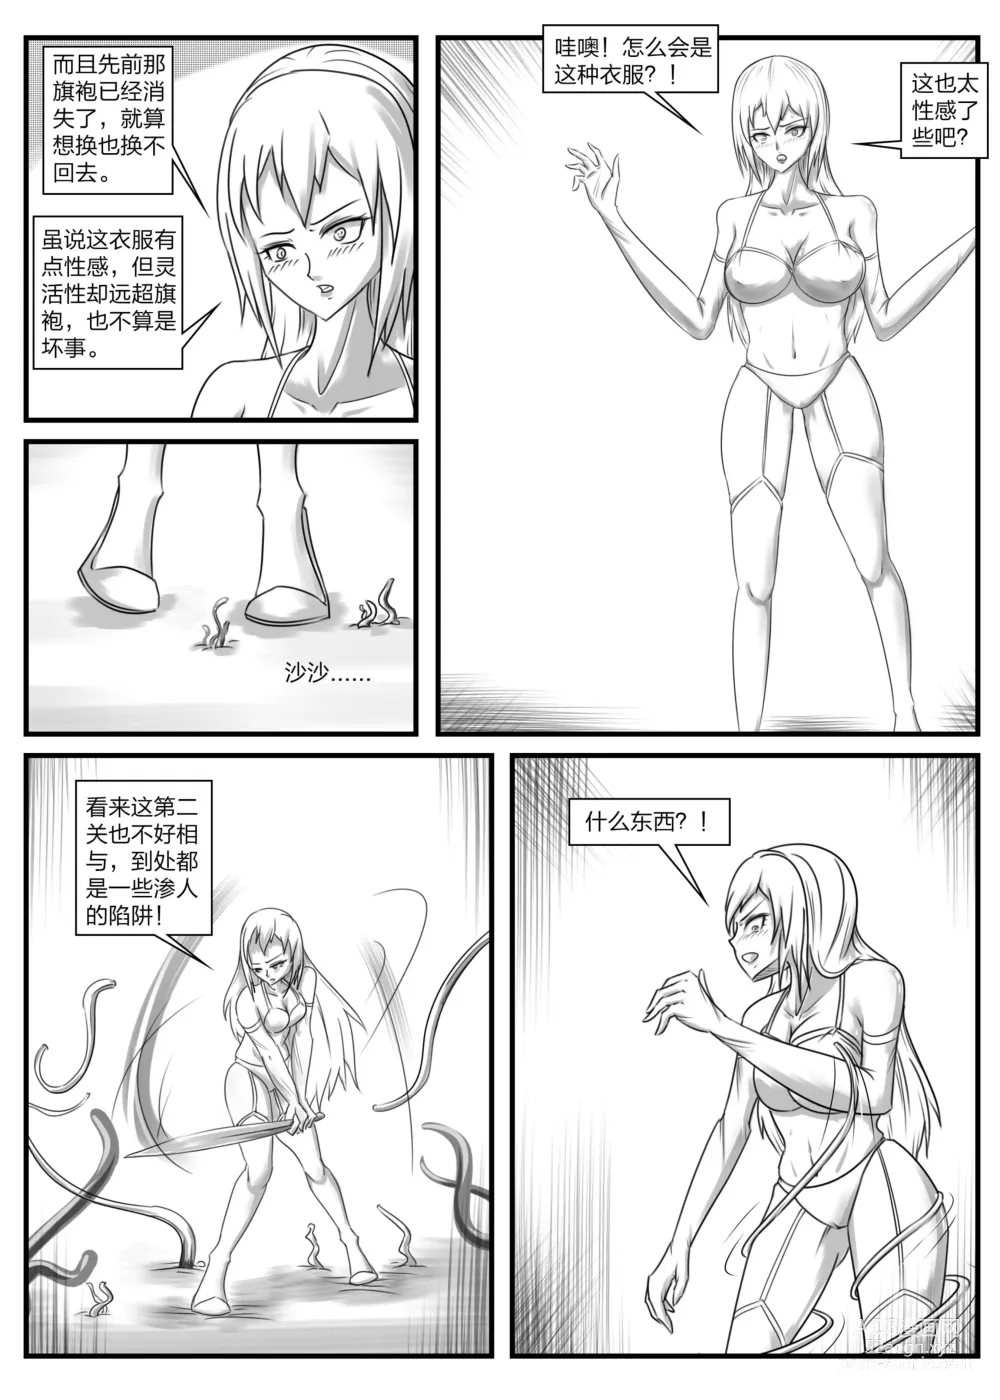 Page 10 of doujinshi 《被困游戏世界2》